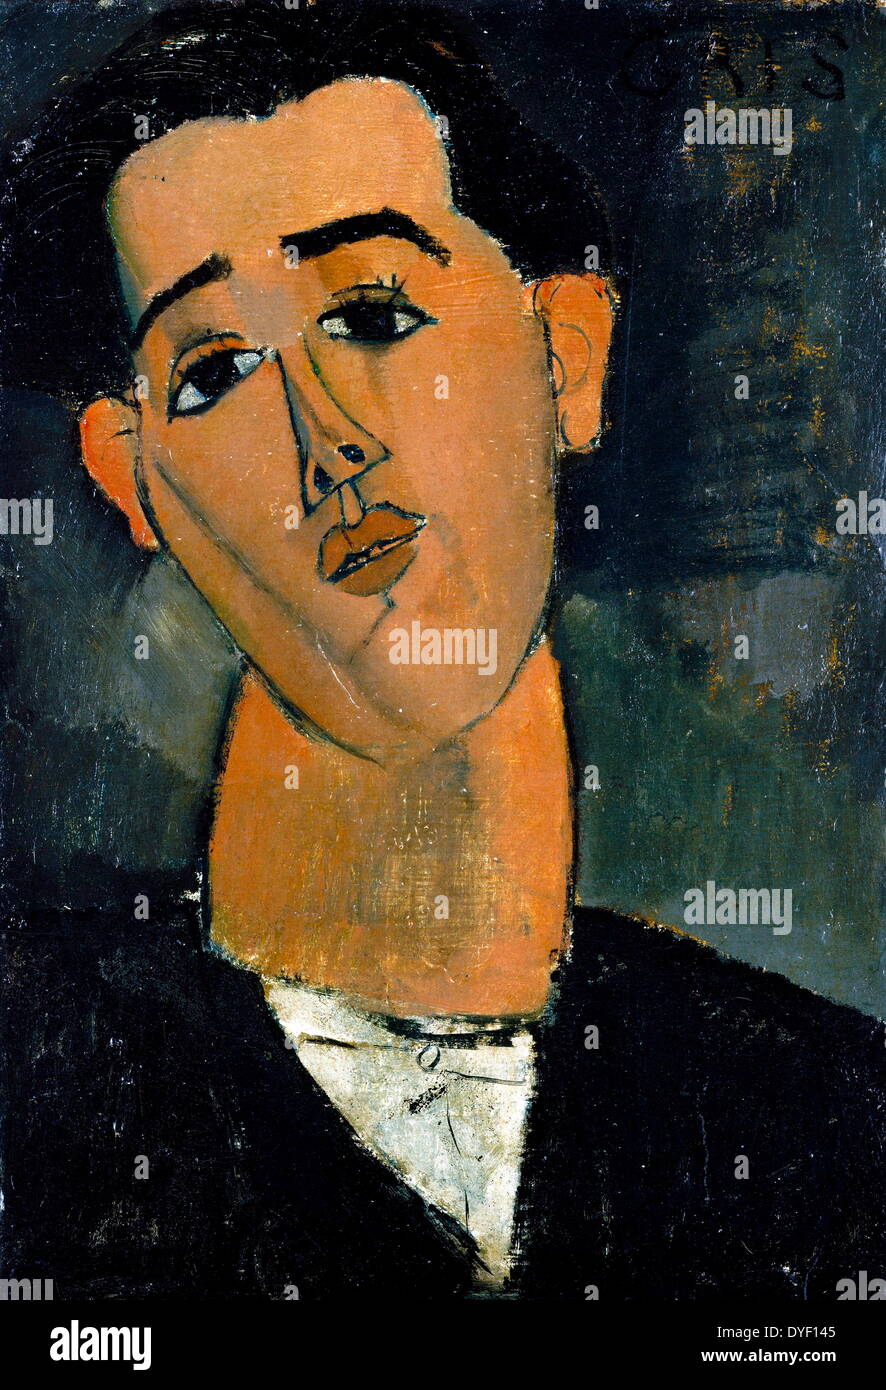 Portrait de José Victoriano González Pérez, (mieux connu sous le nom de Juan Gris) par Amedo Modigliani. Modigliani était vivant du 12 juillet 1884 jusqu'au 24 janvier 1920, et Juan Gris est né le 23 mars 1887 et décédé le 11 mai 1927. Gris était un sculpteur et peintre espagnol qui vécut et travailla en France presque toute sa vie. Ses œuvres sont étroitement liées à l'émergence du cubisme, et sont parmi les plus caractéristiques du mouvement. Huile sur toile, achevée en 1915. Banque D'Images